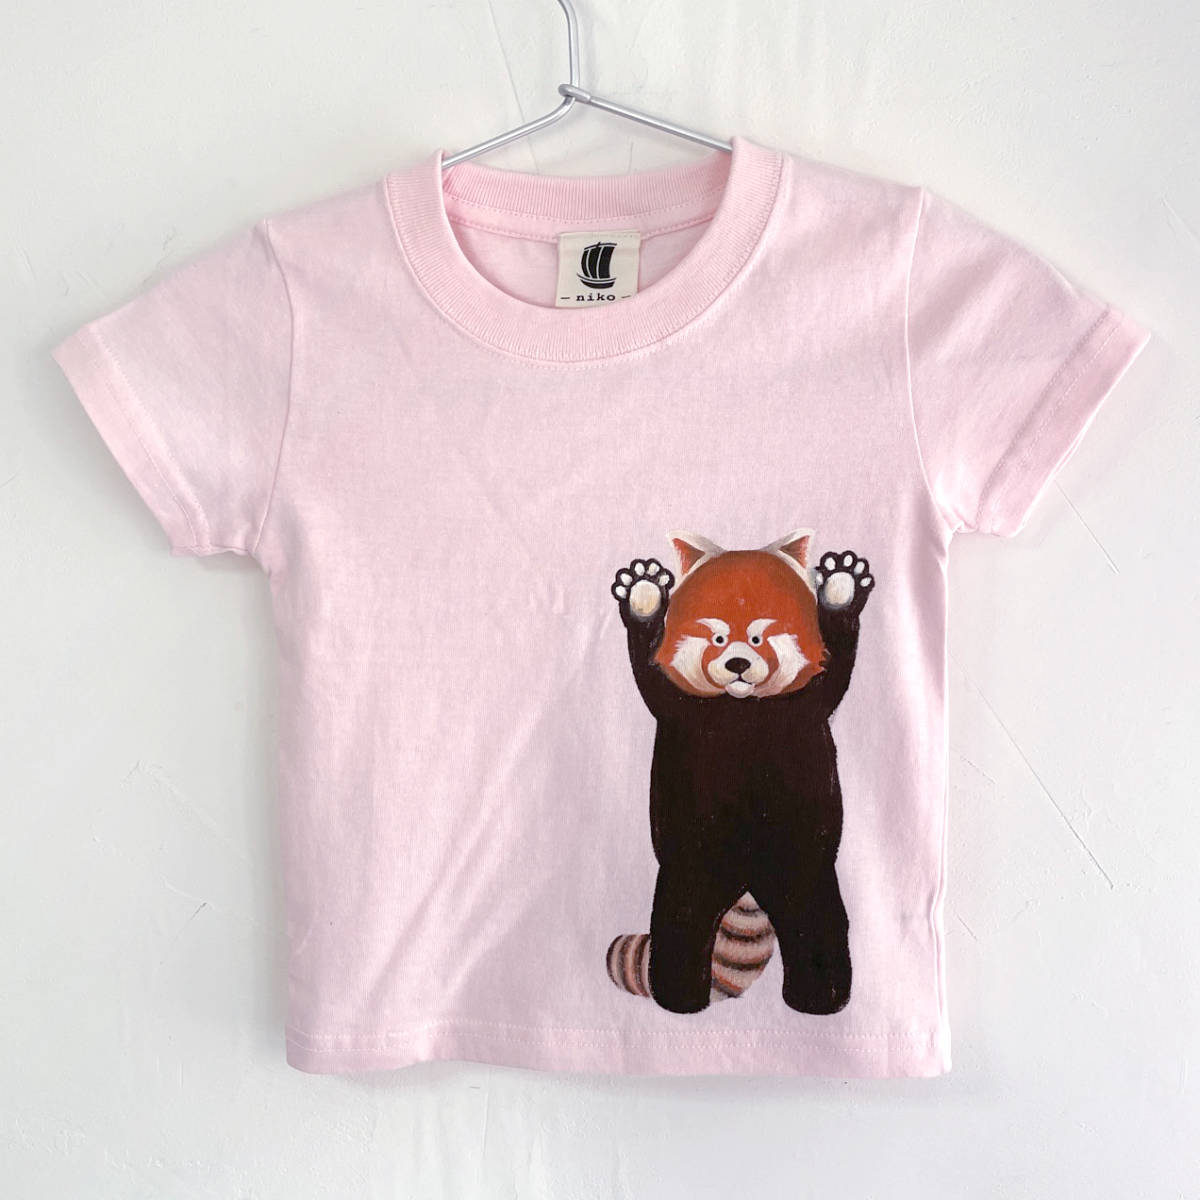 키즈 티셔츠, 사이즈 150, 분홍색, 레드 팬더 프린트 티셔츠, 하얀색, 수공, 손으로 그린 티셔츠, 동물, 상의, 반소매 티셔츠, 150(145~154cm)